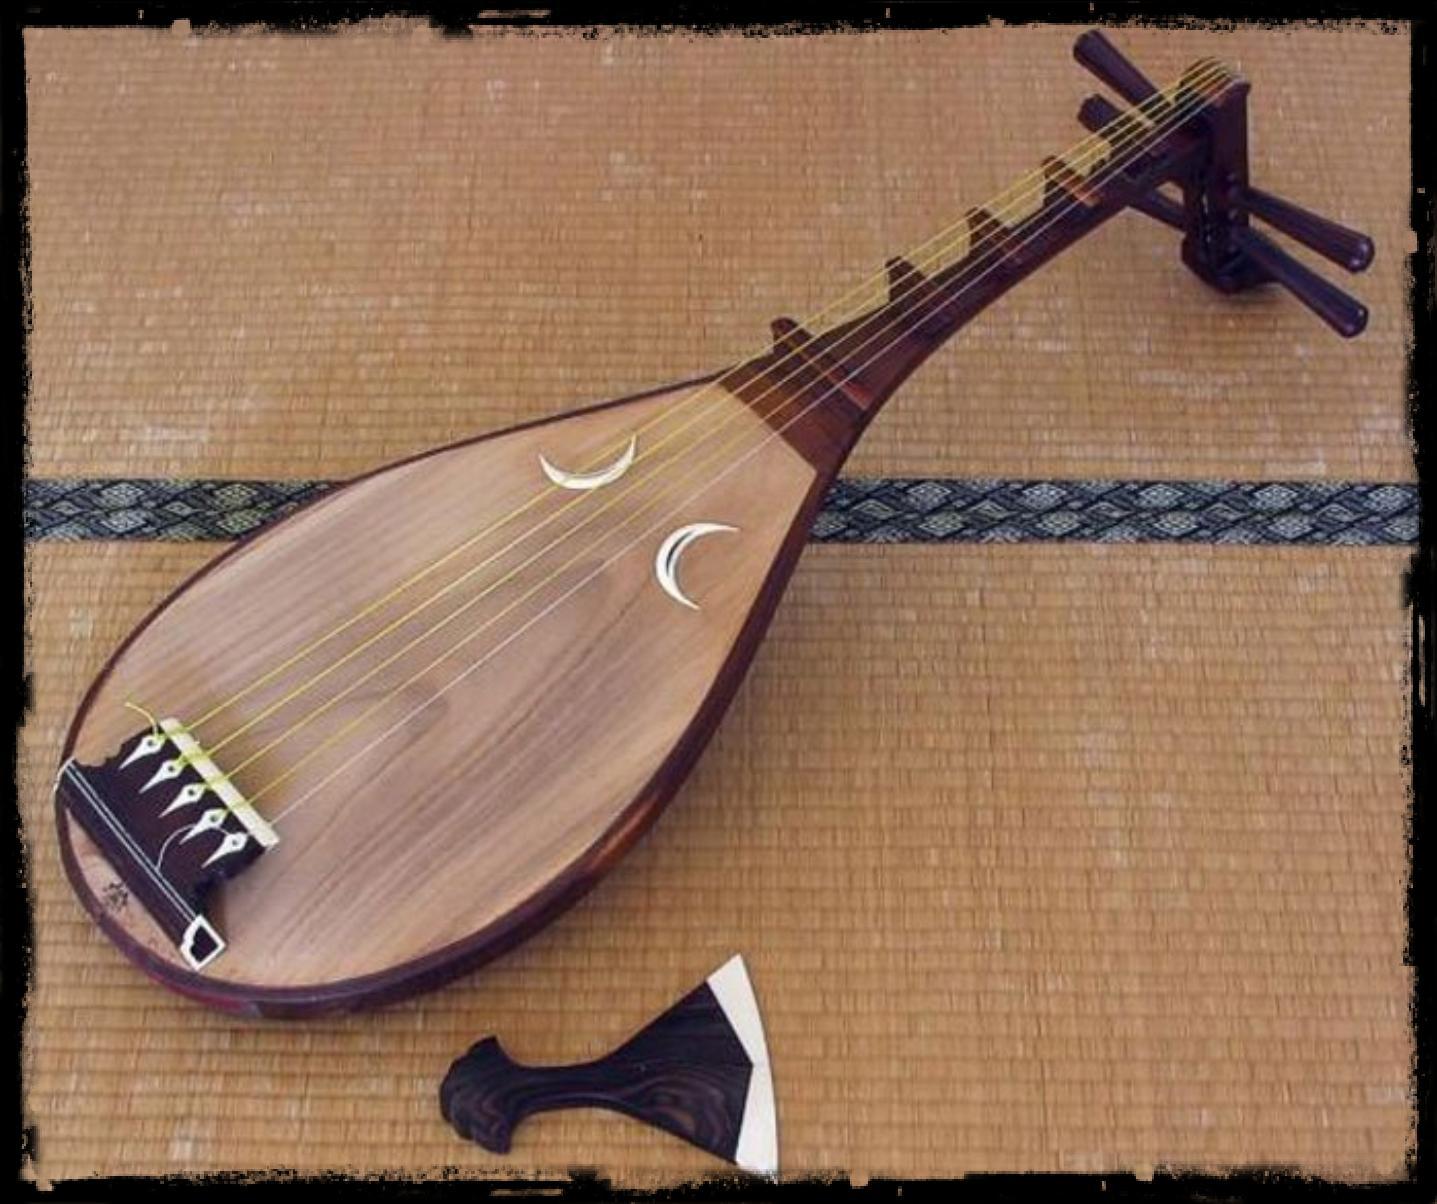 Японская трехструнная лютня с длинной шейкой. Японские музыкальные инструменты бива. Японская лютня бива. Бива японский инструмент. Японский струнный инструмент бива.